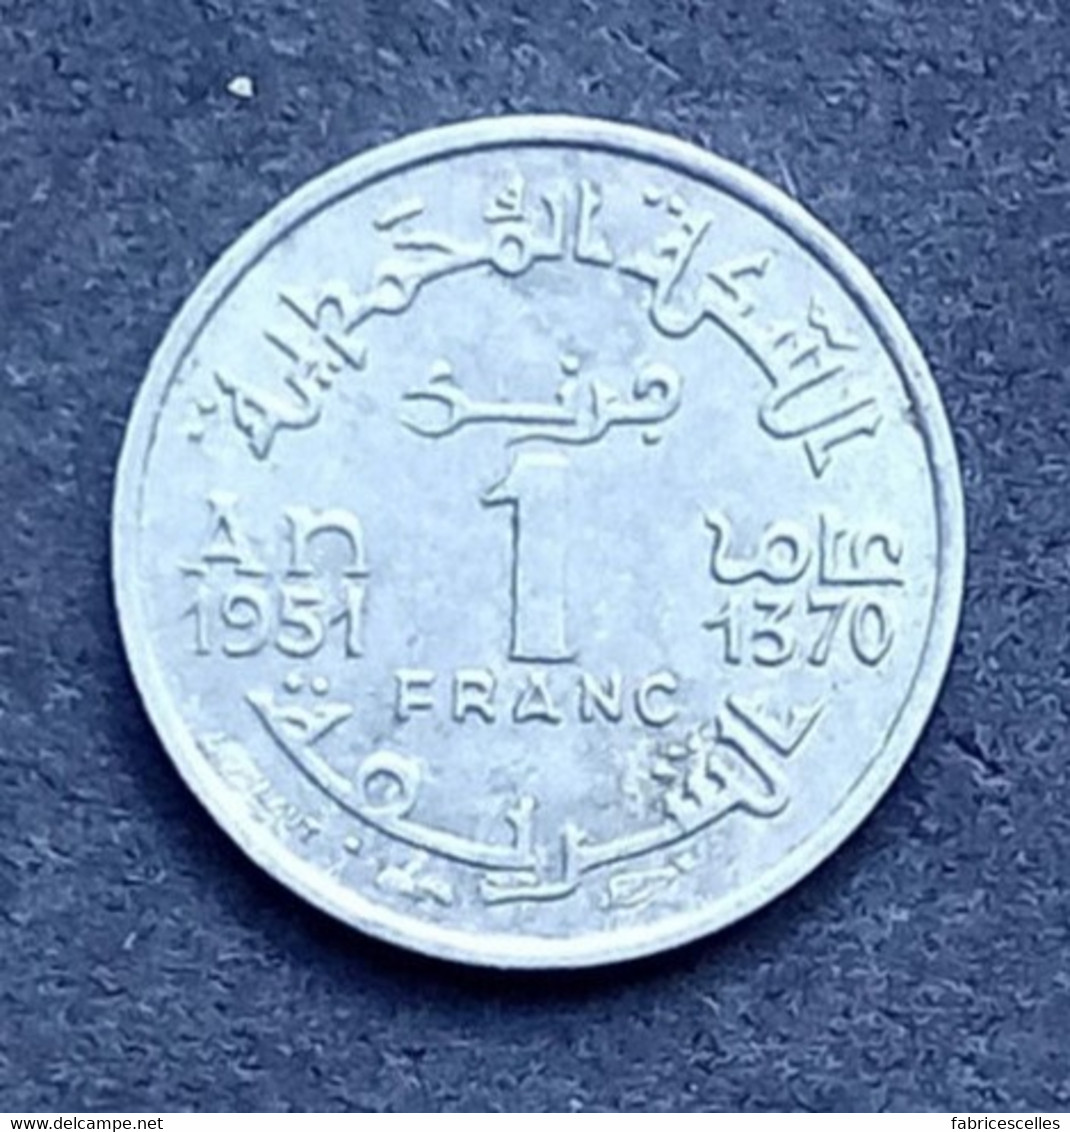 Maroc - Pièce De 1 Franc 1370 (1951),  Empire Chérifien - Morocco